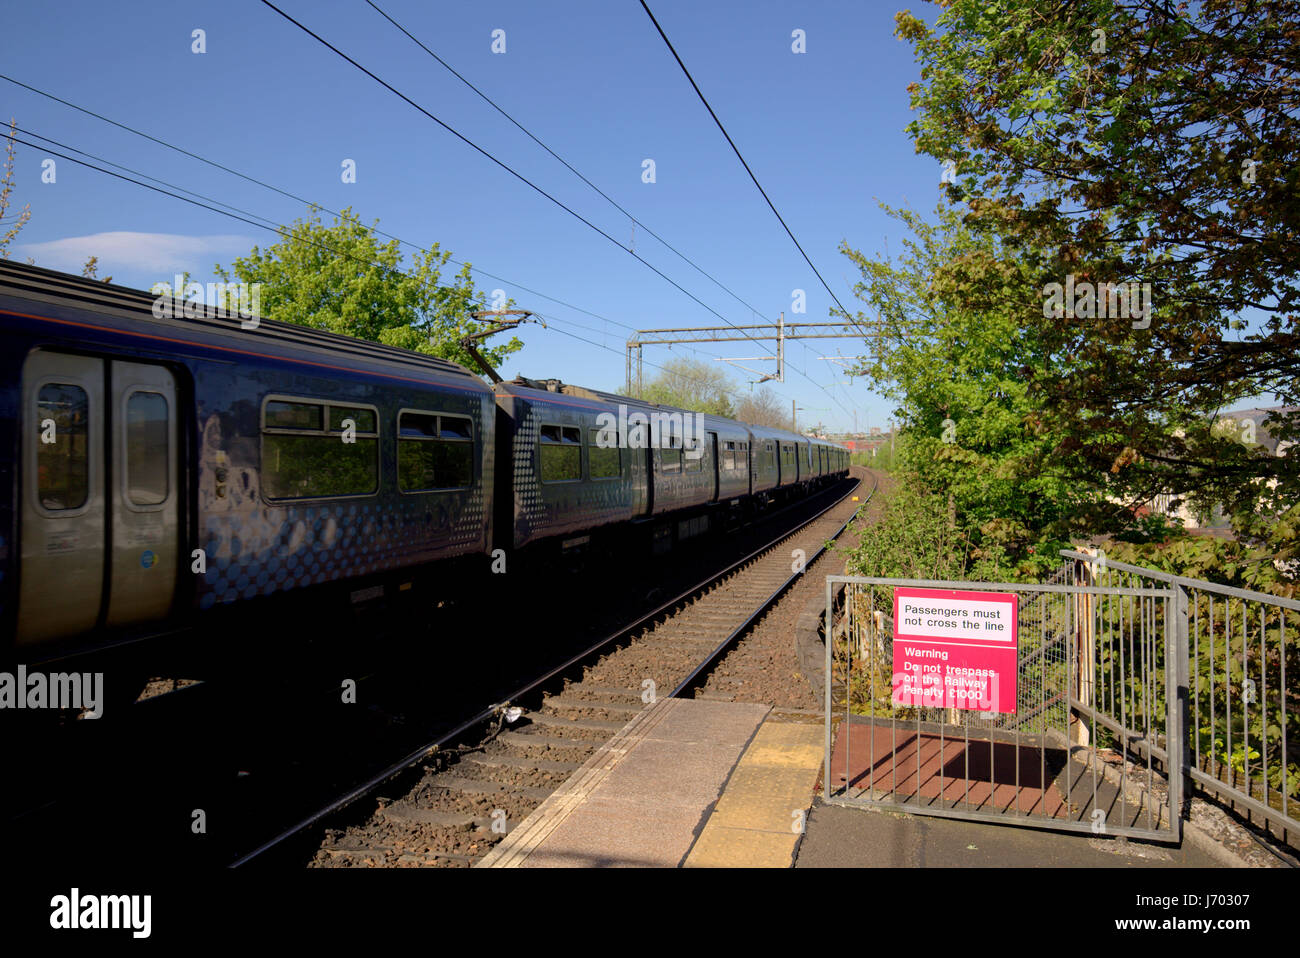 Scotrail treno nella stazione senza sconfinamenti sulla ferrovia segno Drumchapel Foto Stock